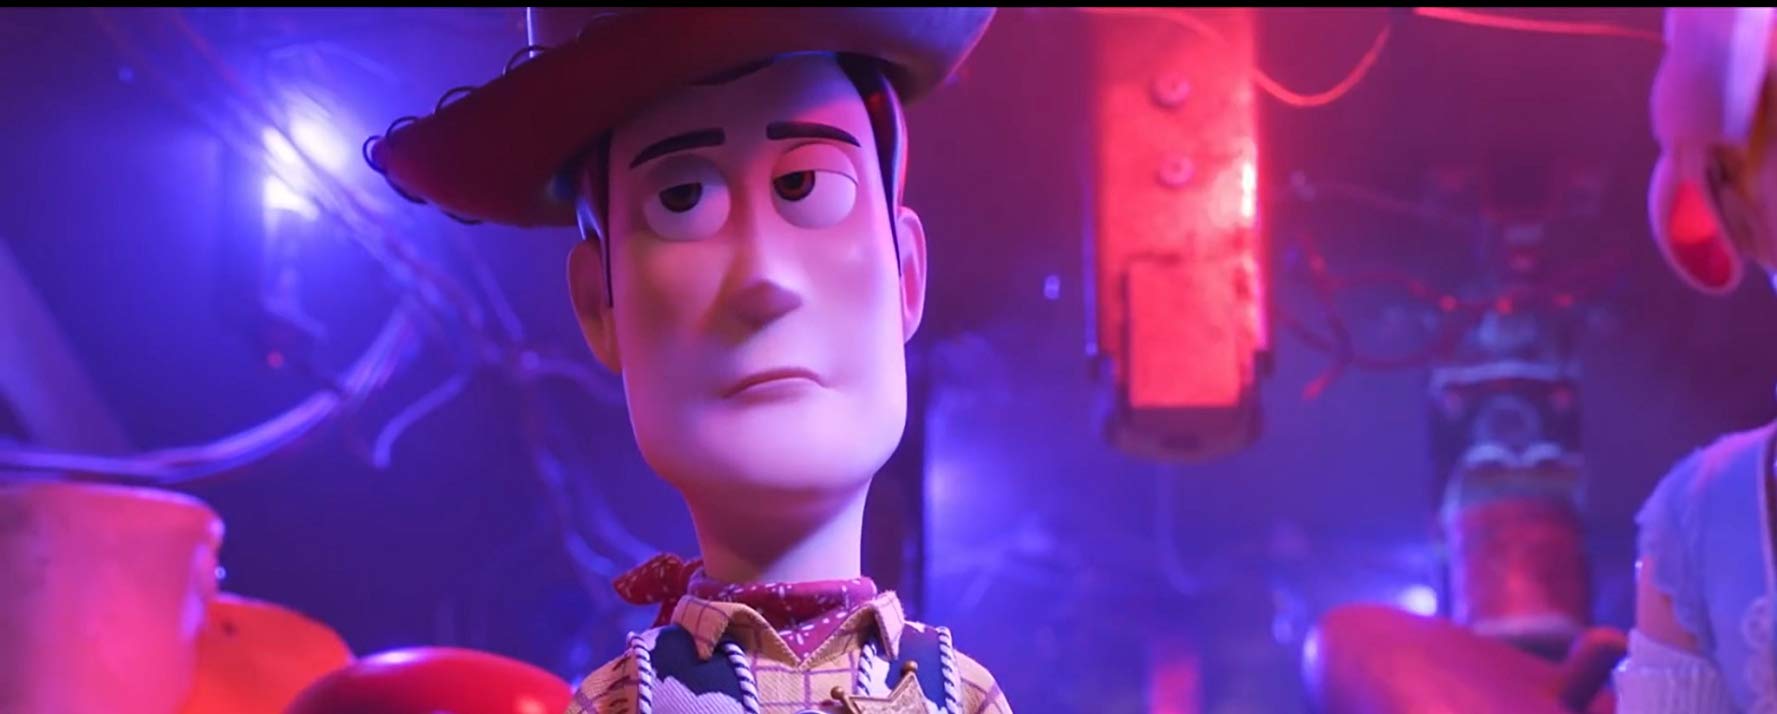 Filmowe ferie z hitami 2019 (bilety 12 zł): Toy Story 4